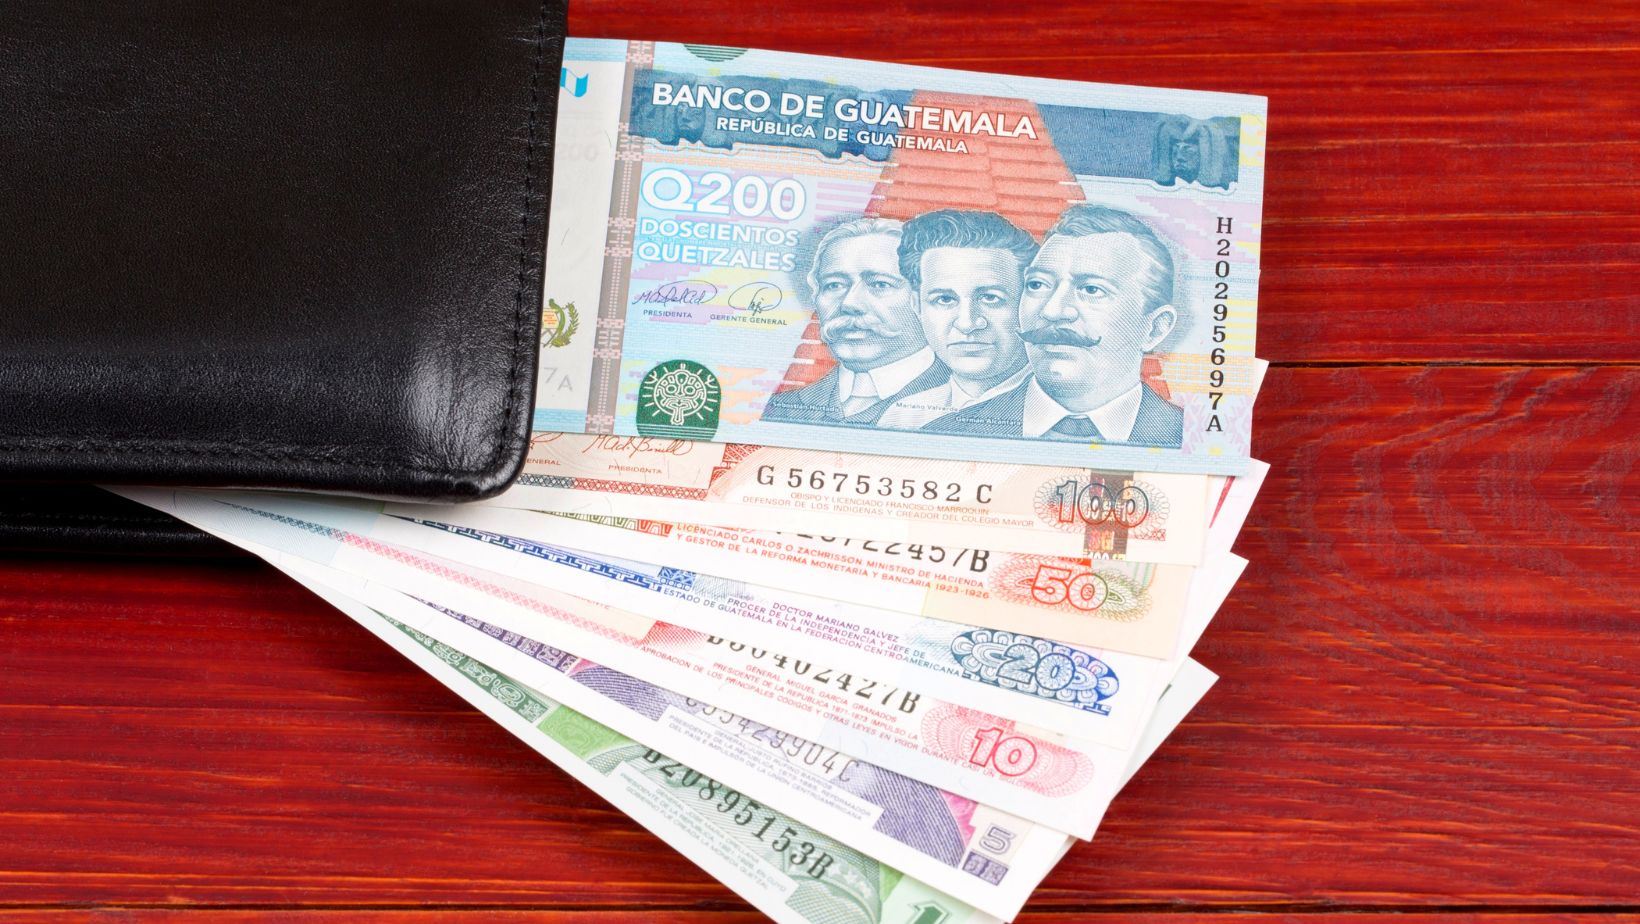 Acomo Esta El Dolar en Guatemala: A Comprehensive Guide to Currency Exchange